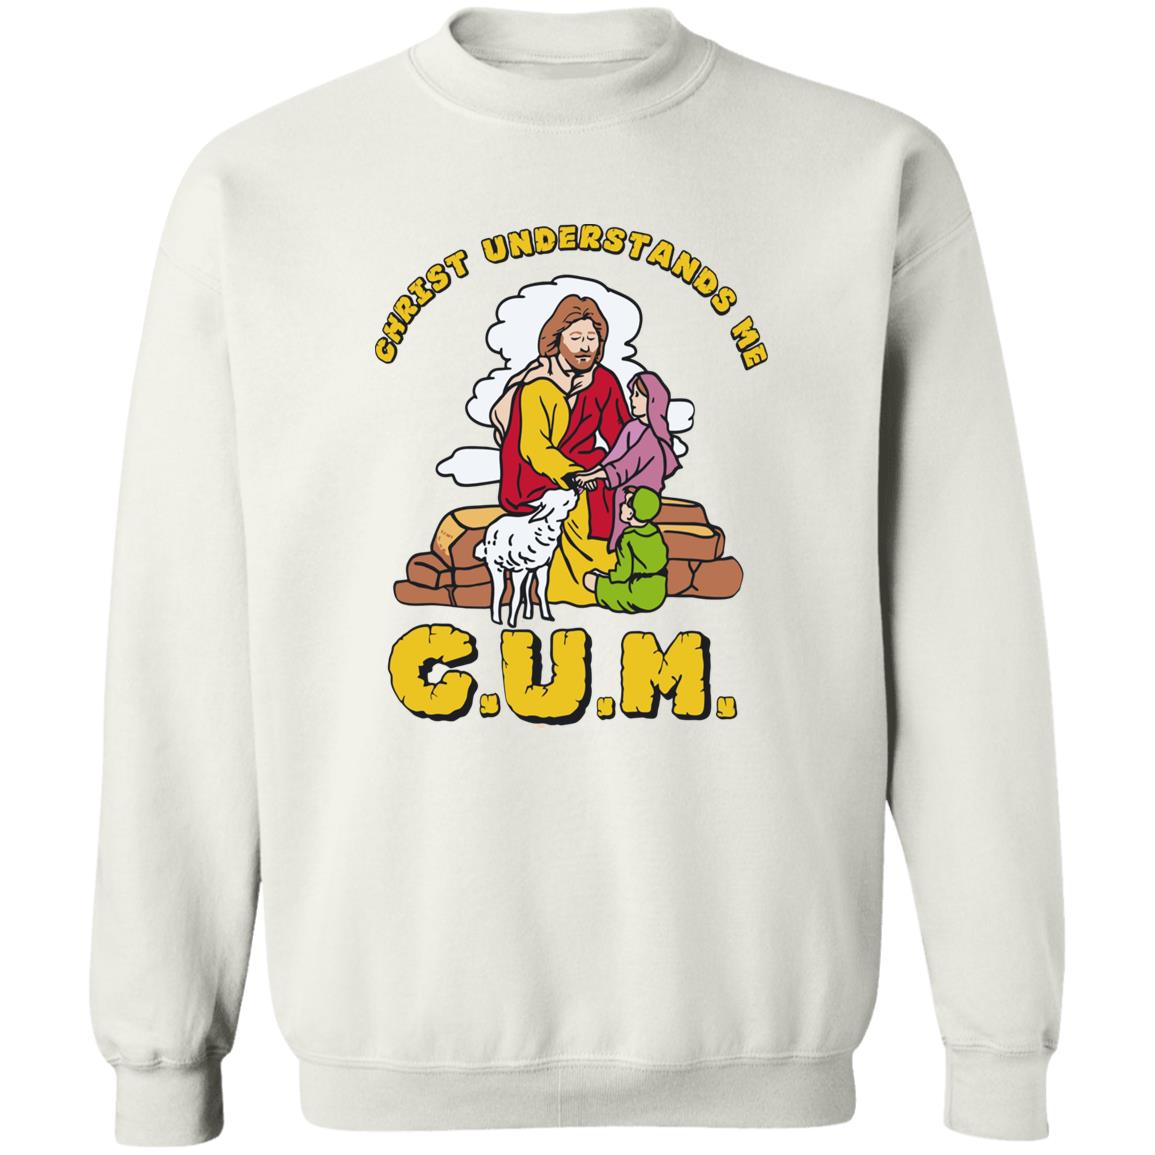 God Christ Understands Me Cum Shirt 2